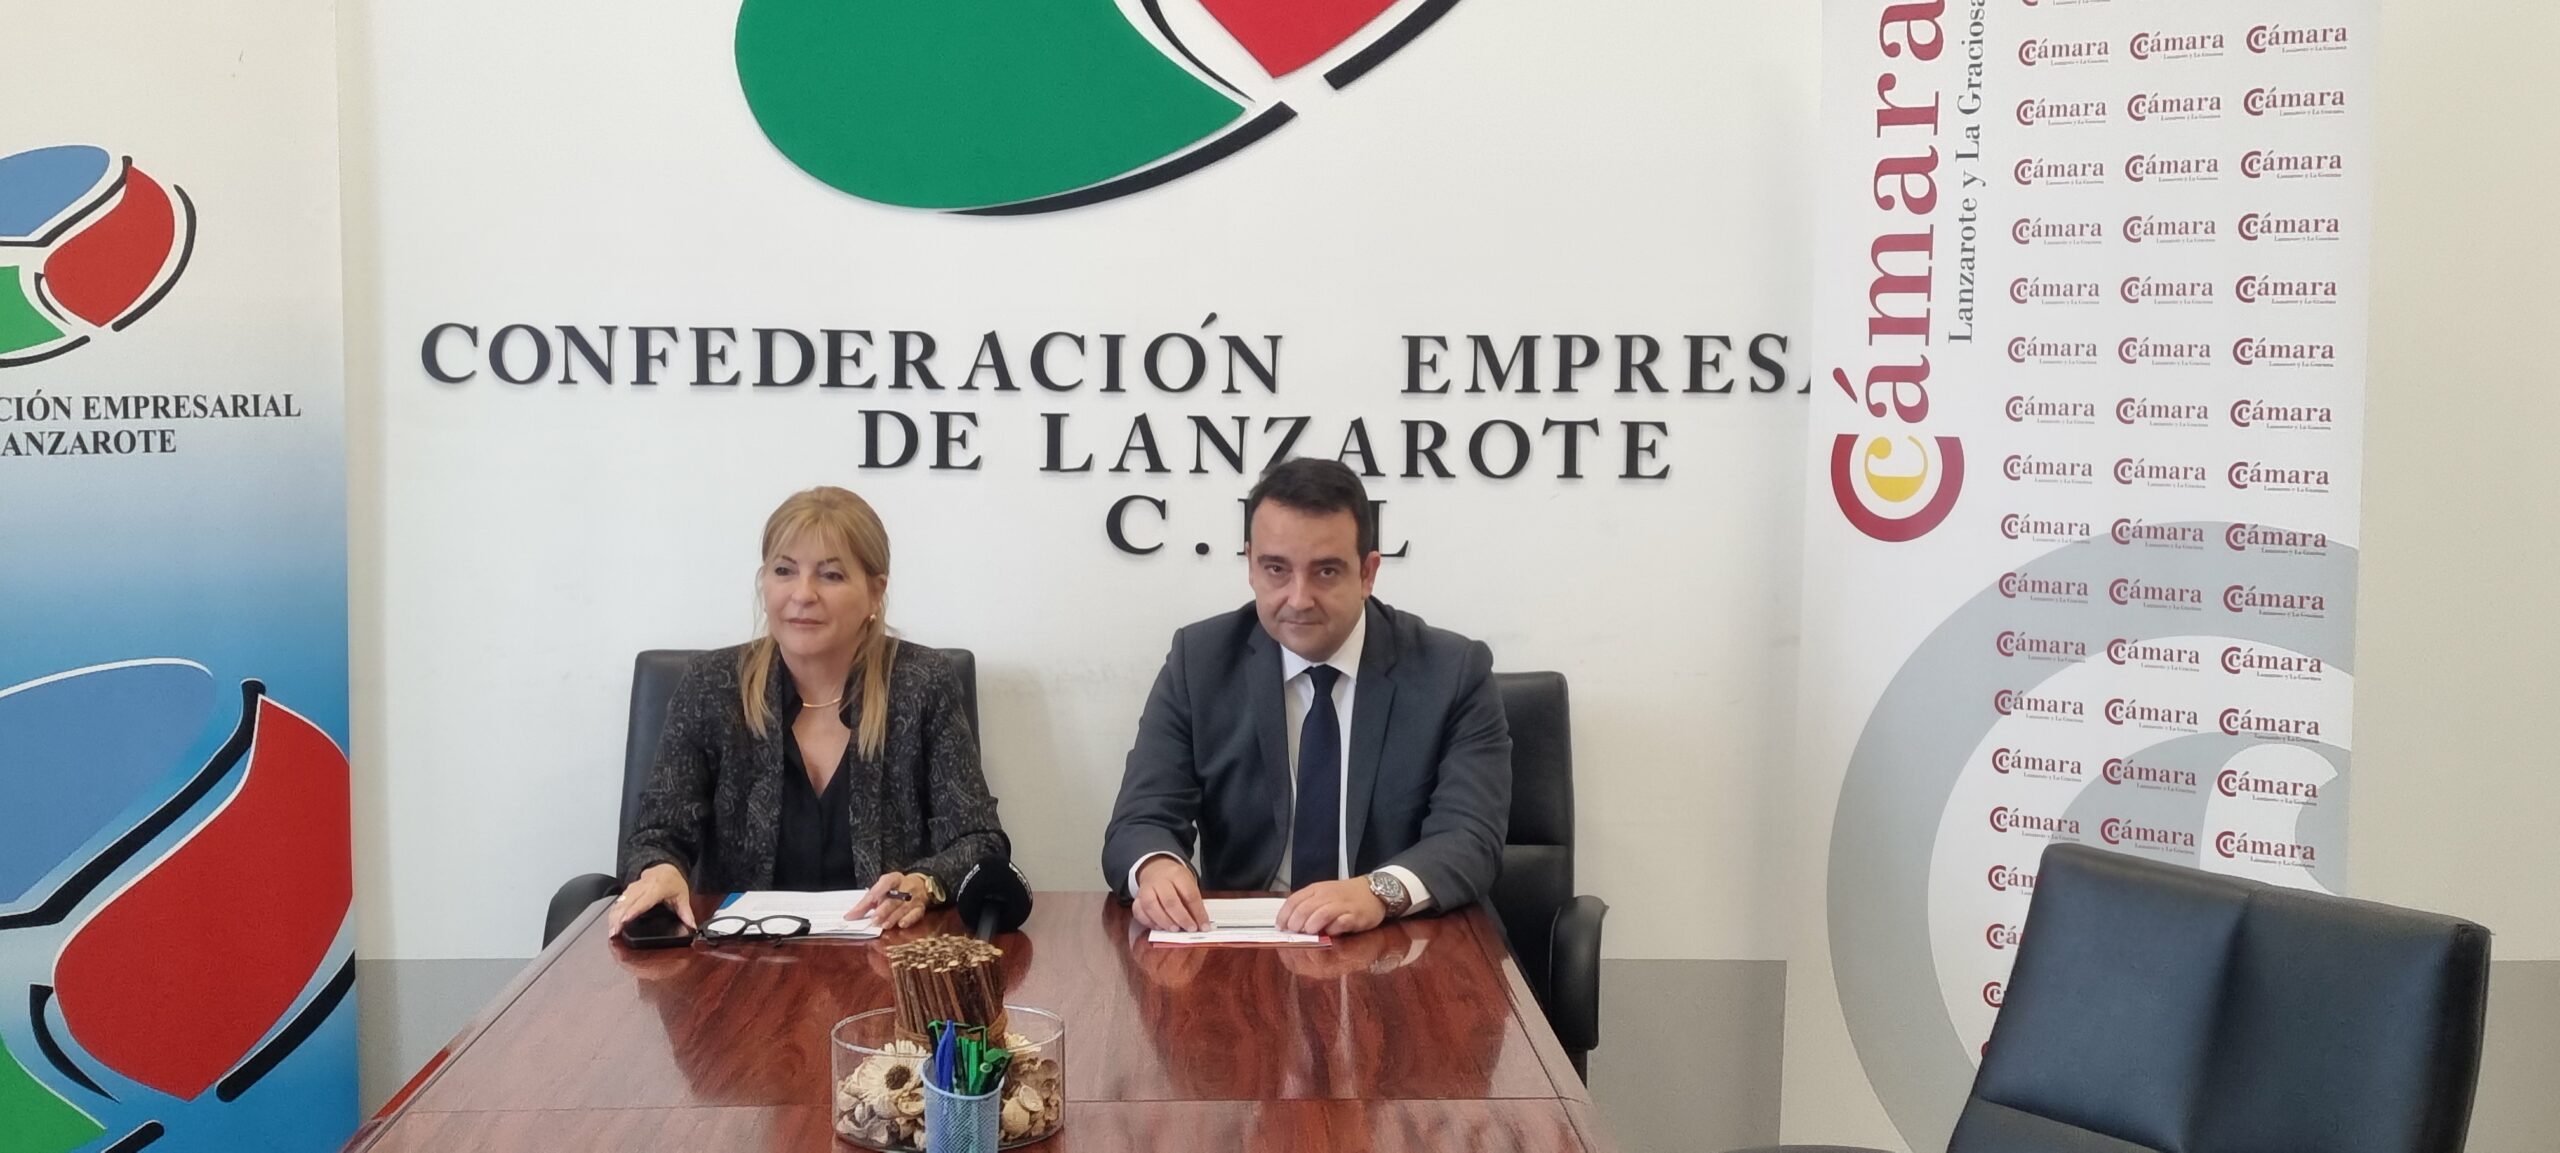 La Confederación Empresarial de Lanzarote y la Cámara de Comercio refuerzan sus lazos para fortalecer el tejido económico